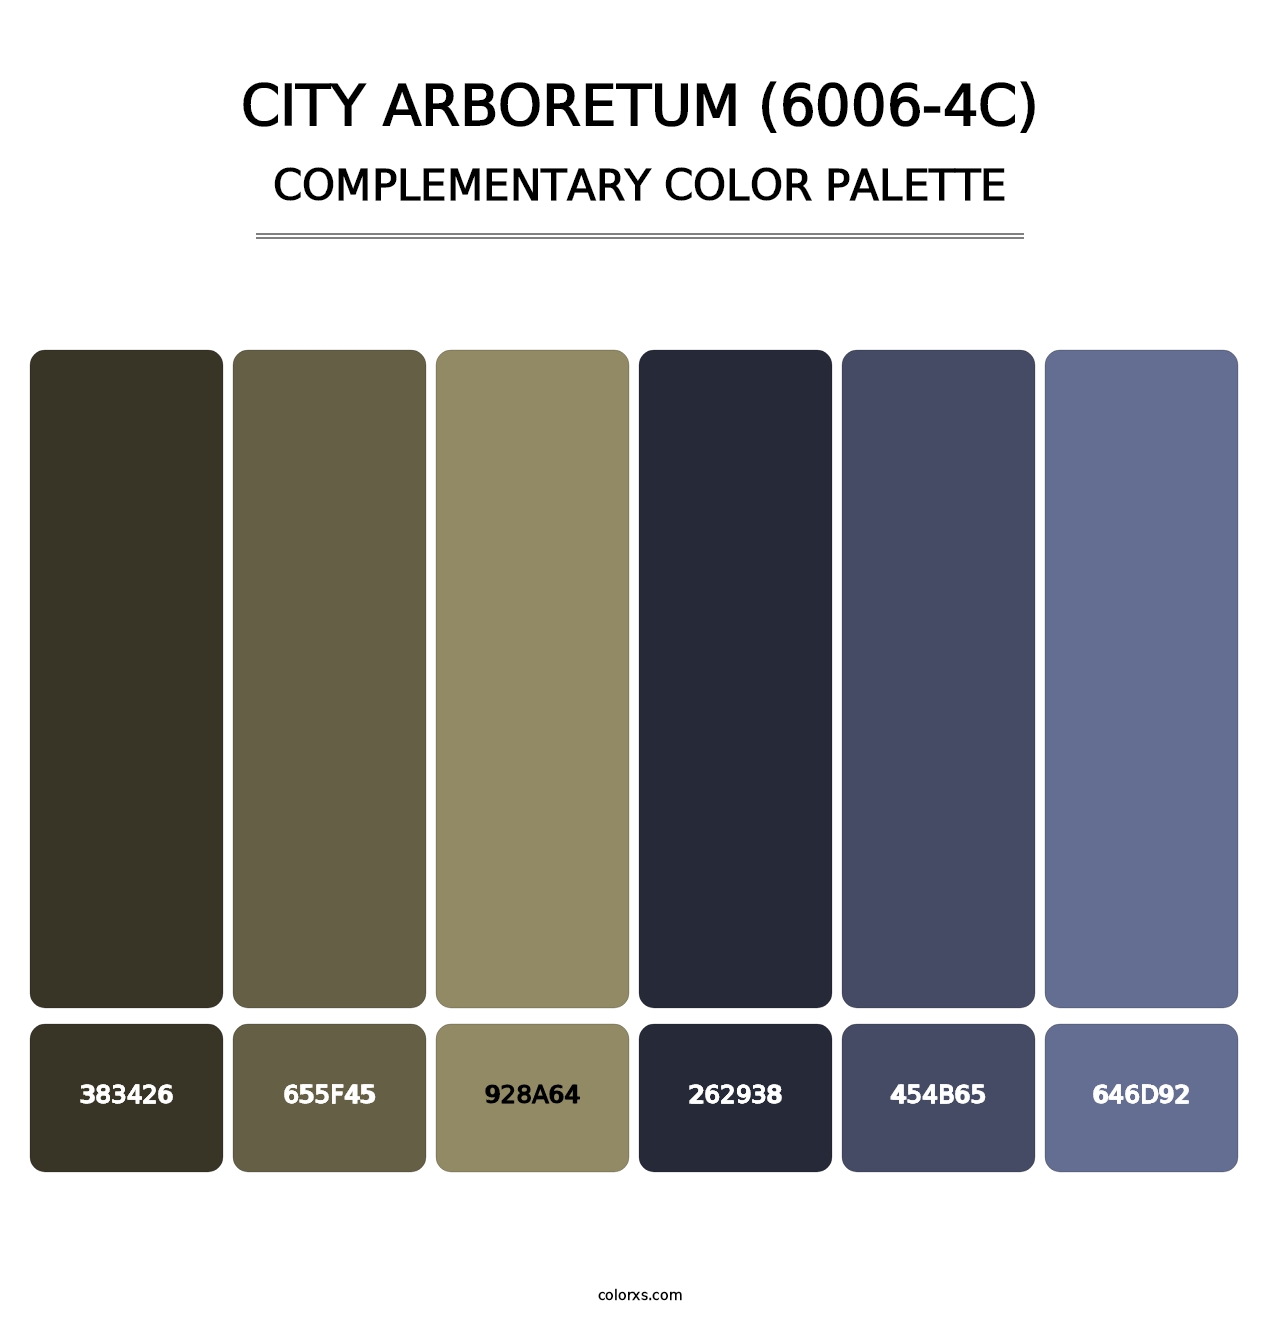 City Arboretum (6006-4C) - Complementary Color Palette